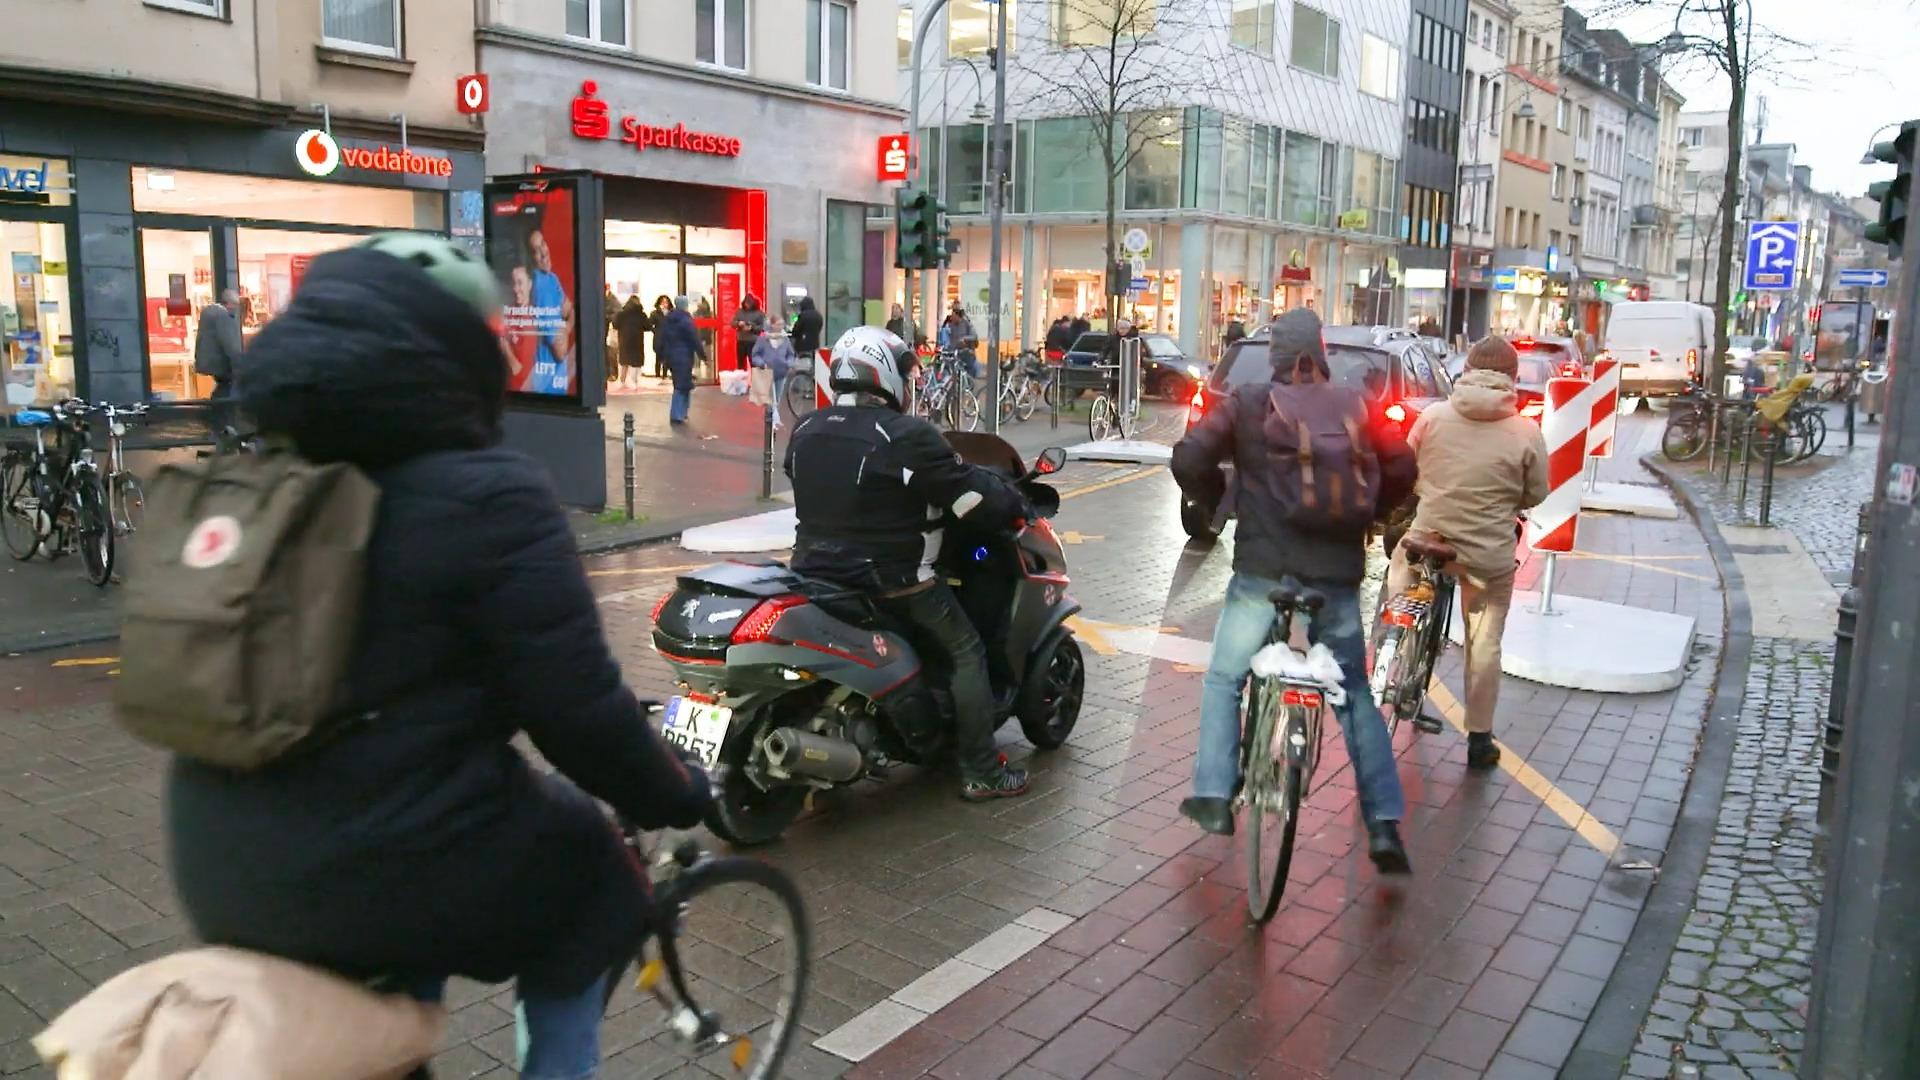 Segnali e Tempo 20 permettono al traffico di disgregarsi "Puro orrore" In una zona alla moda di Colonia